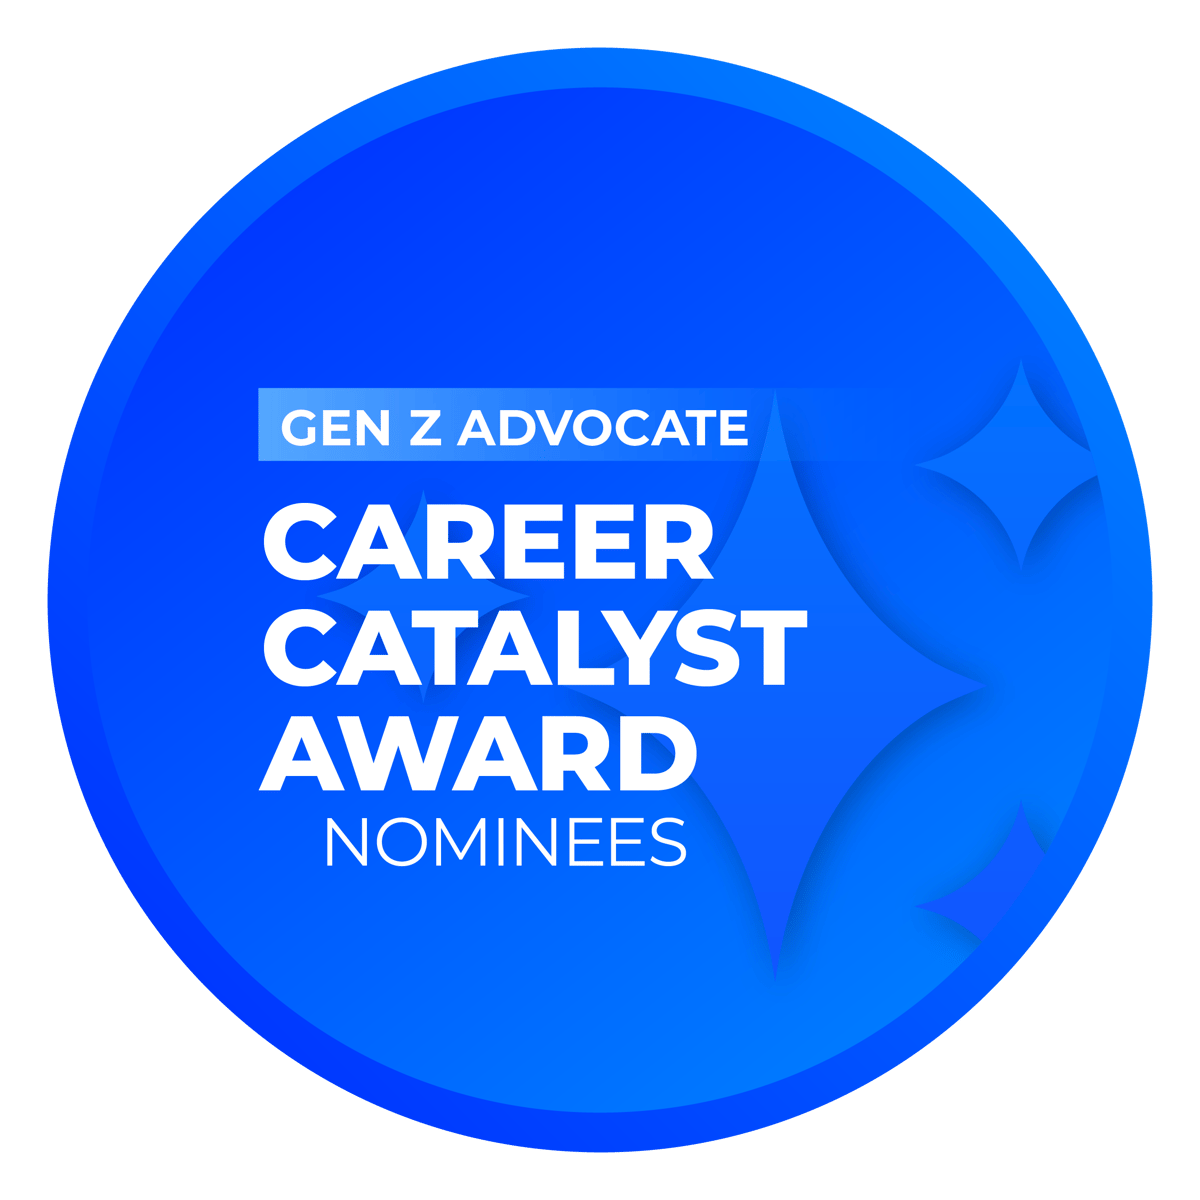 Career Catalyst Award: Gen Z Advocate Nominees